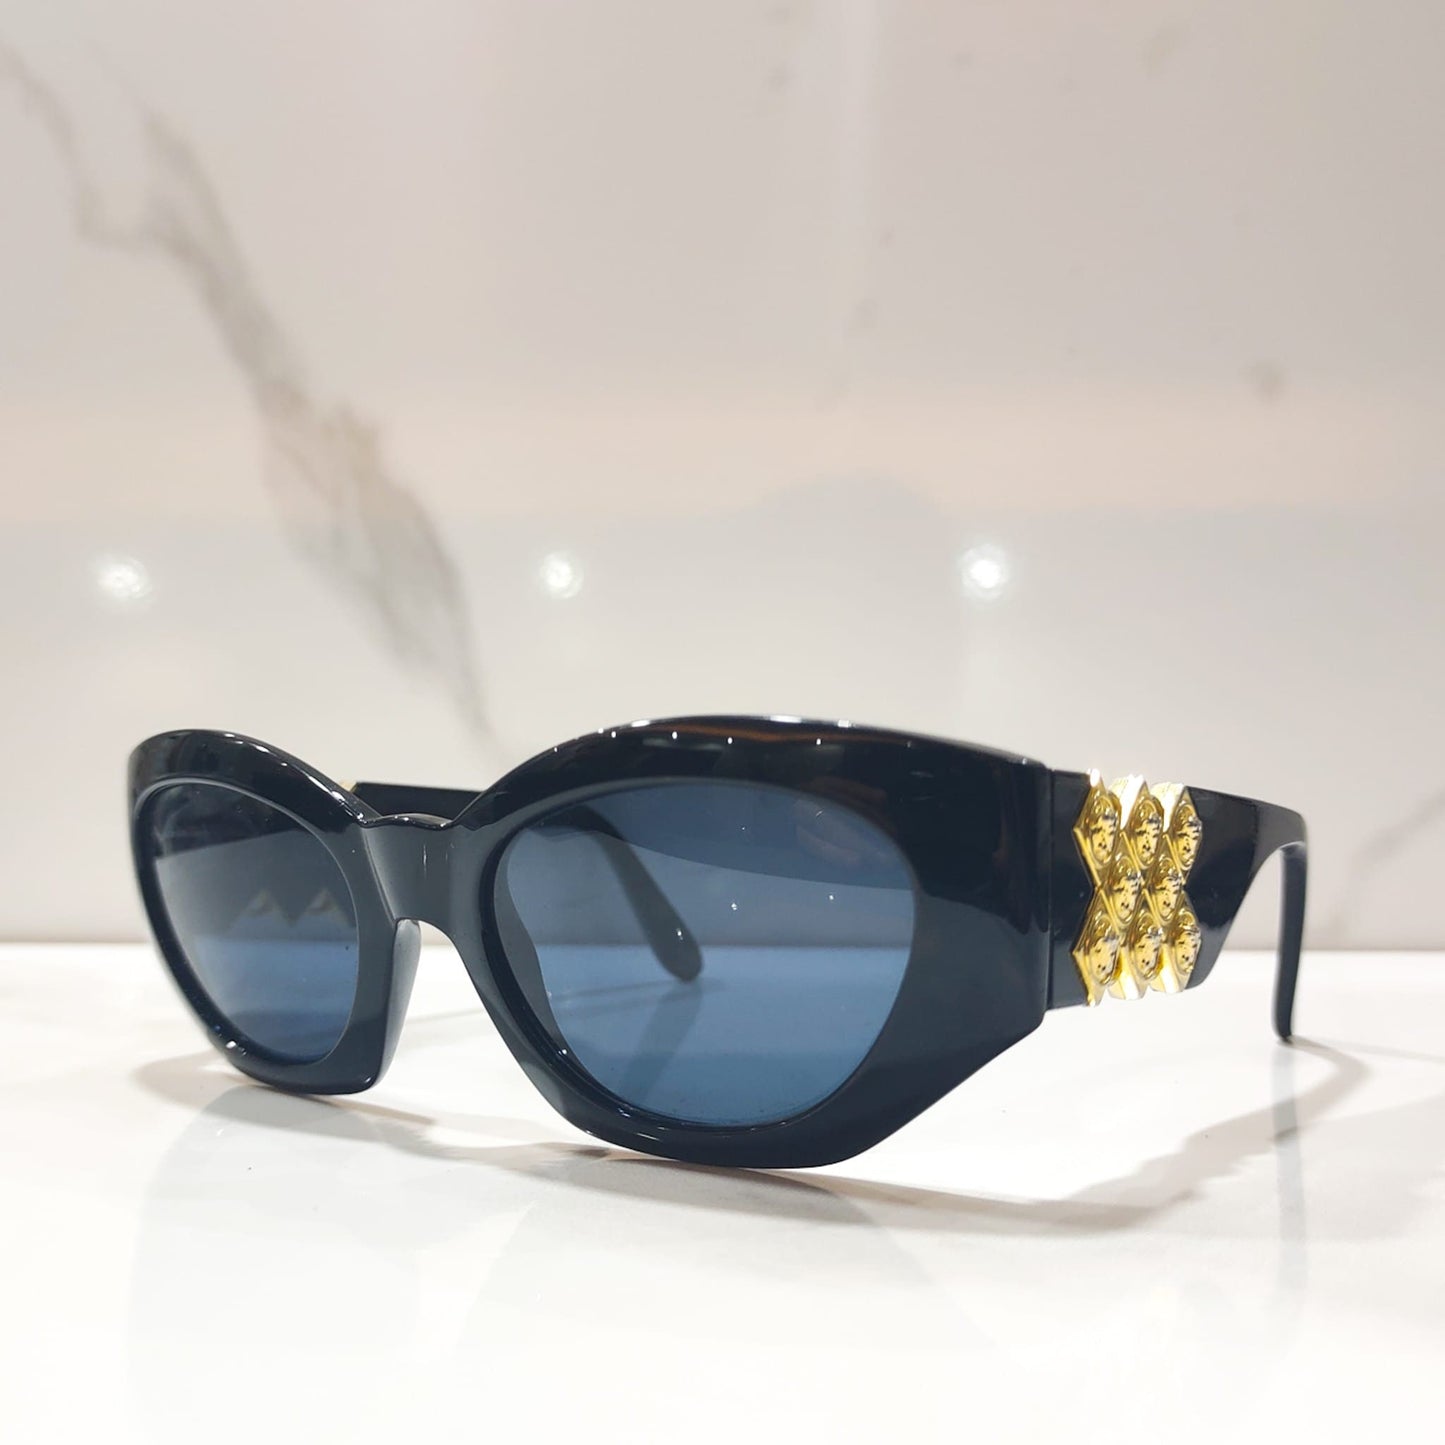 Gianni Versace 420 H vintage sunglasses brille lunette